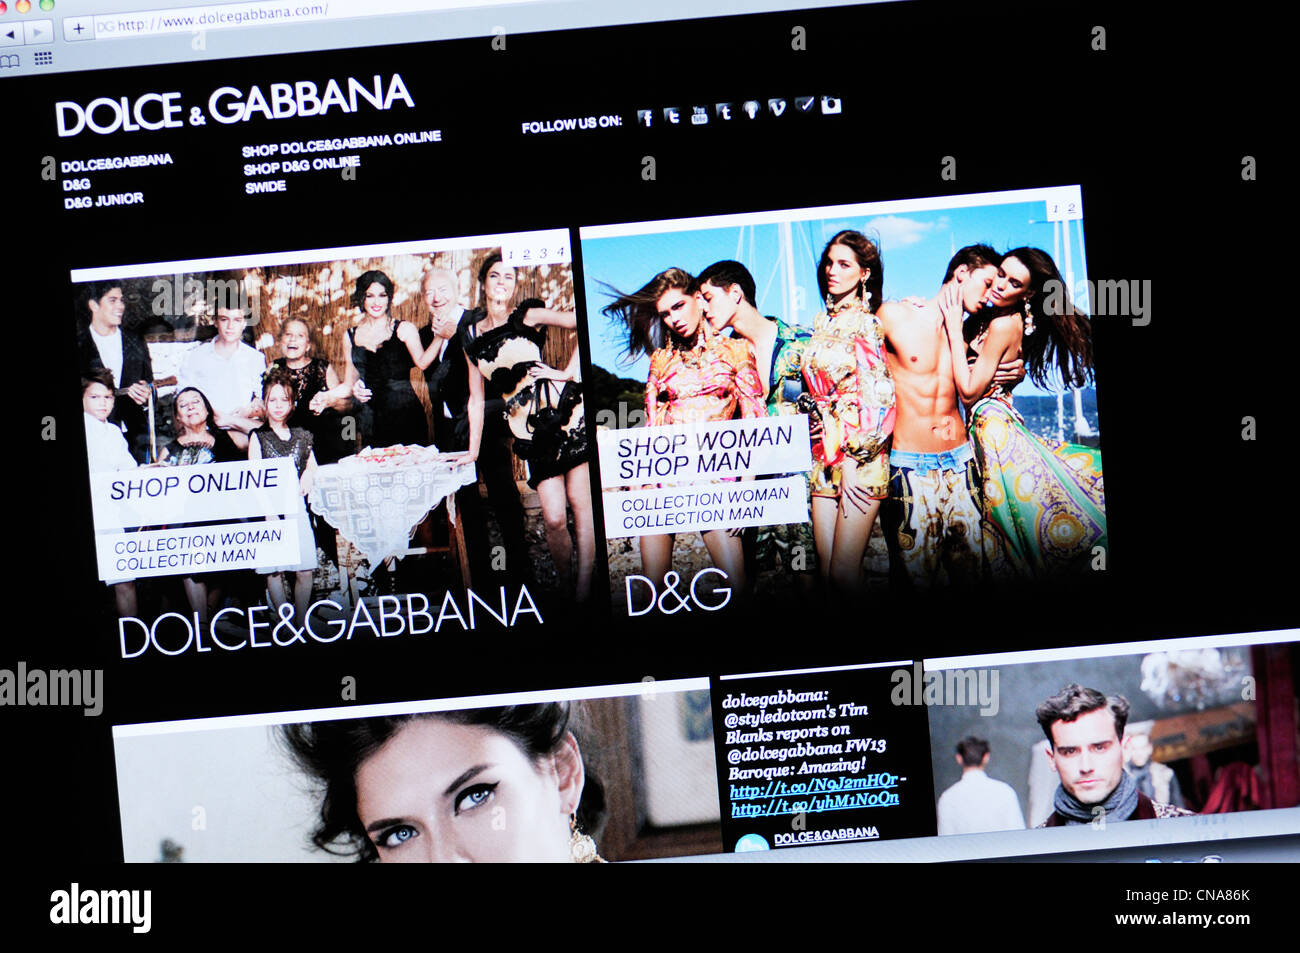 dolce gabbana website official